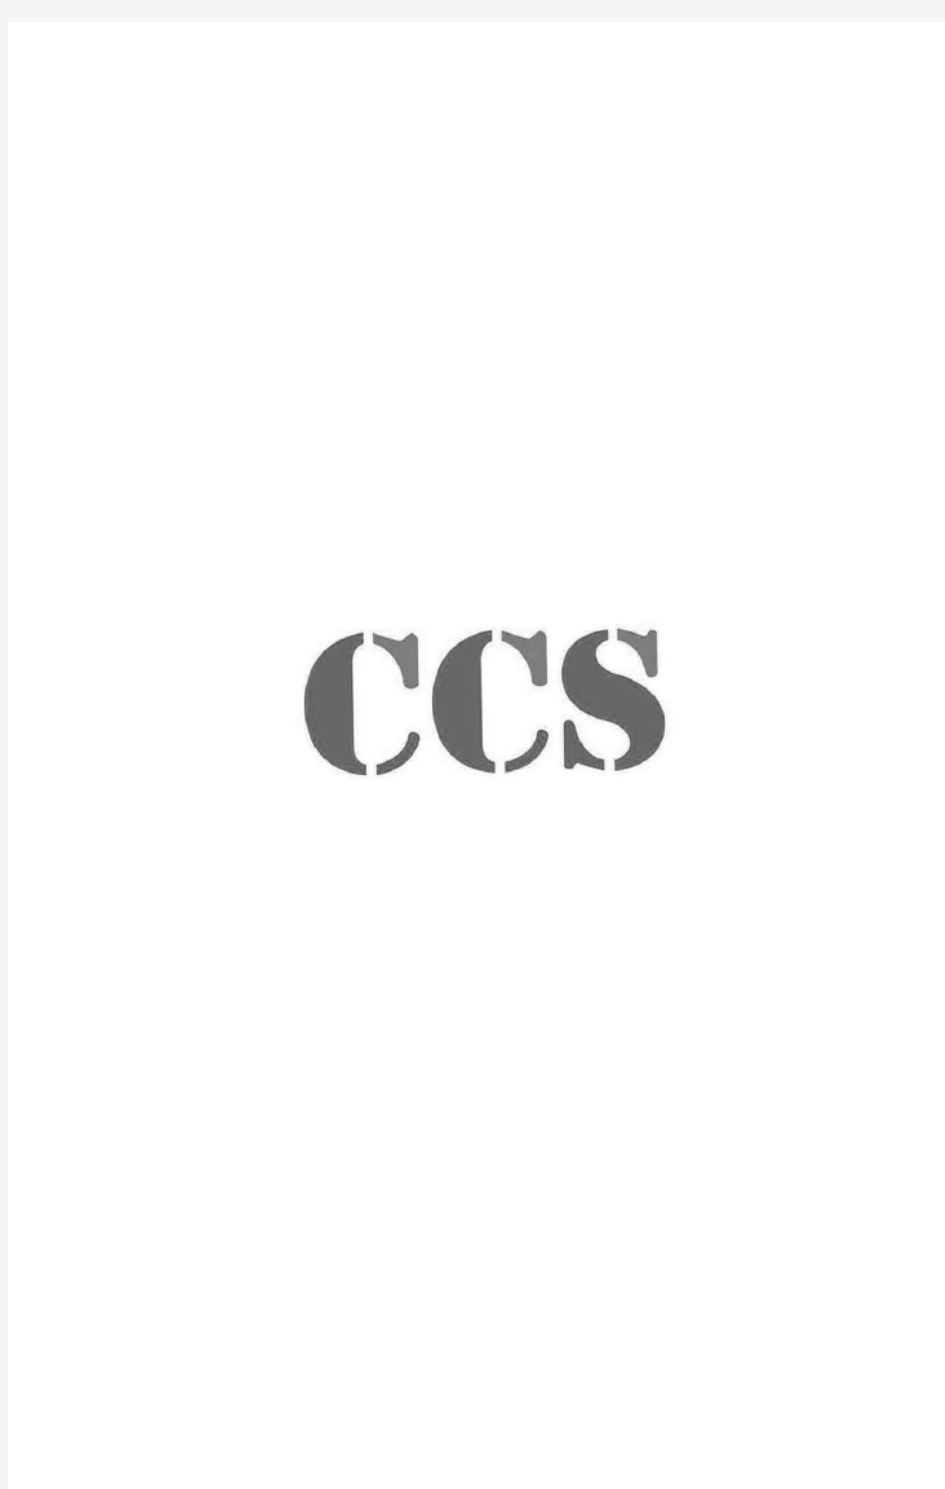 CCS船级社关于船舶检验要求一览表